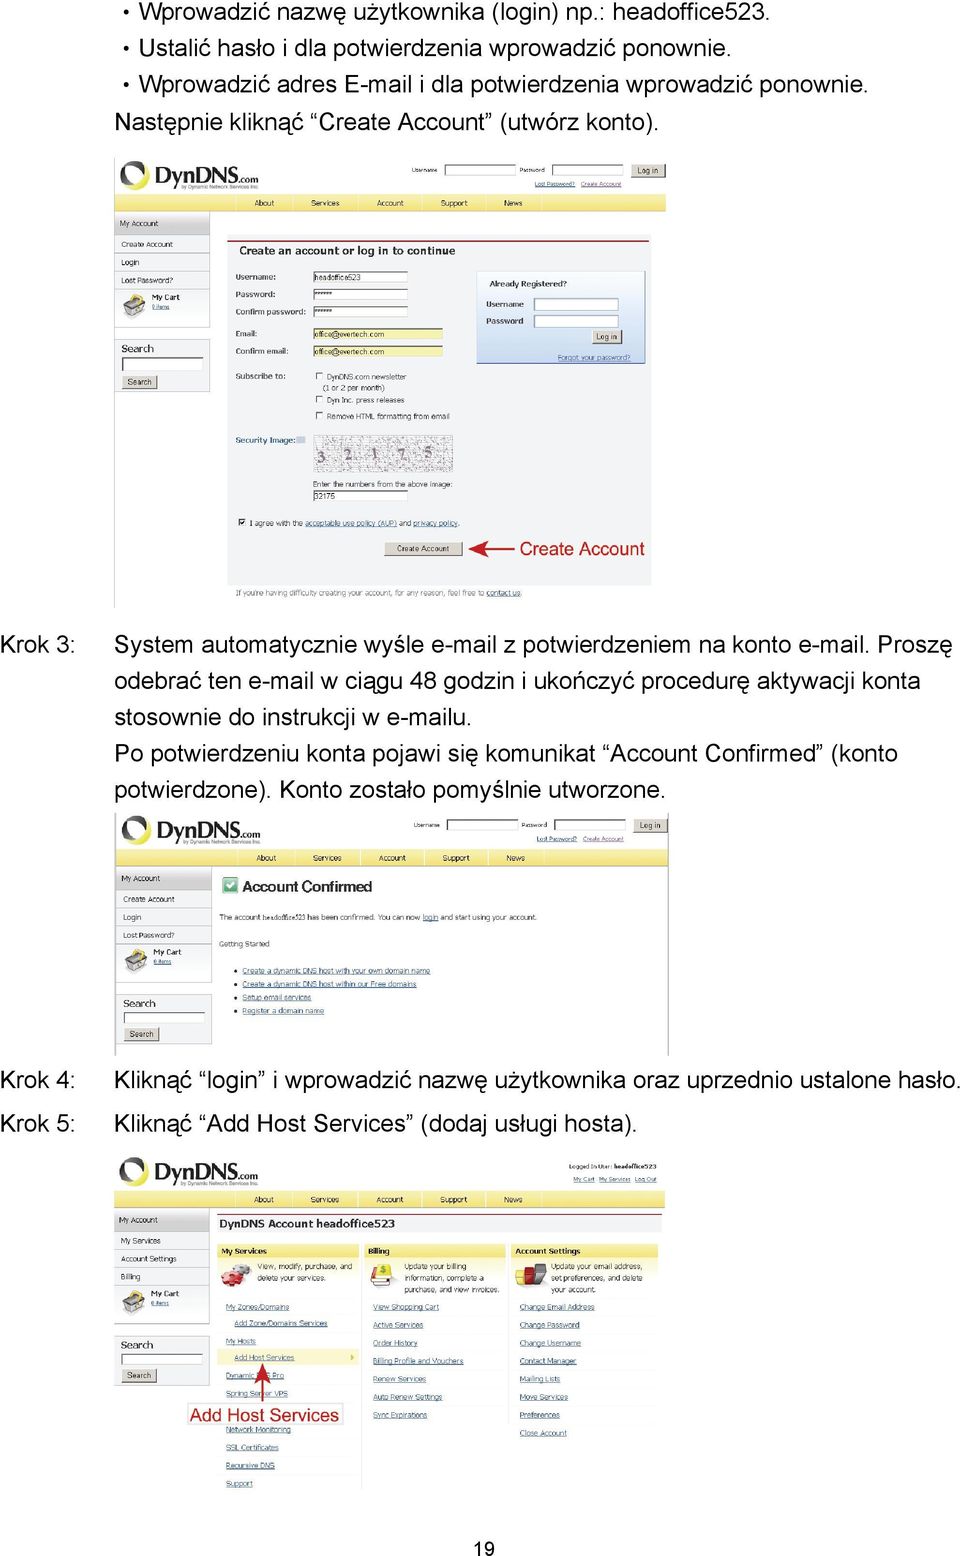 Krok 3: System automatycznie wyśle e-mail z potwierdzeniem na konto e-mail.